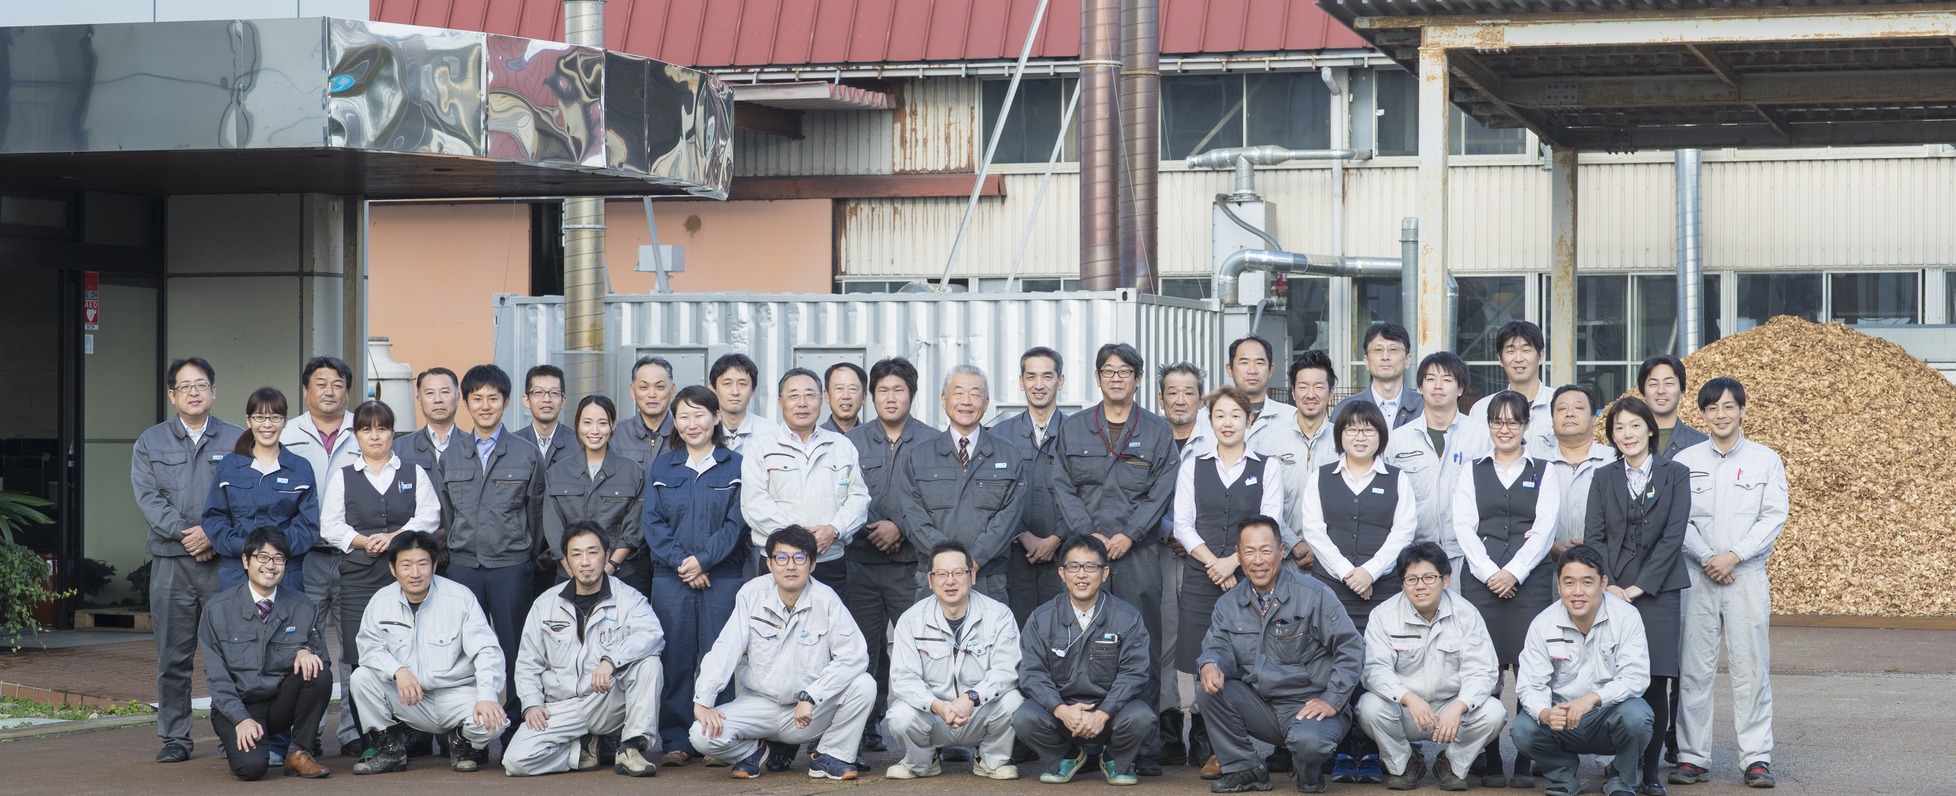 đơn hàng kỹ sư môi trường làm việc tại Osaka, Nhật Bản